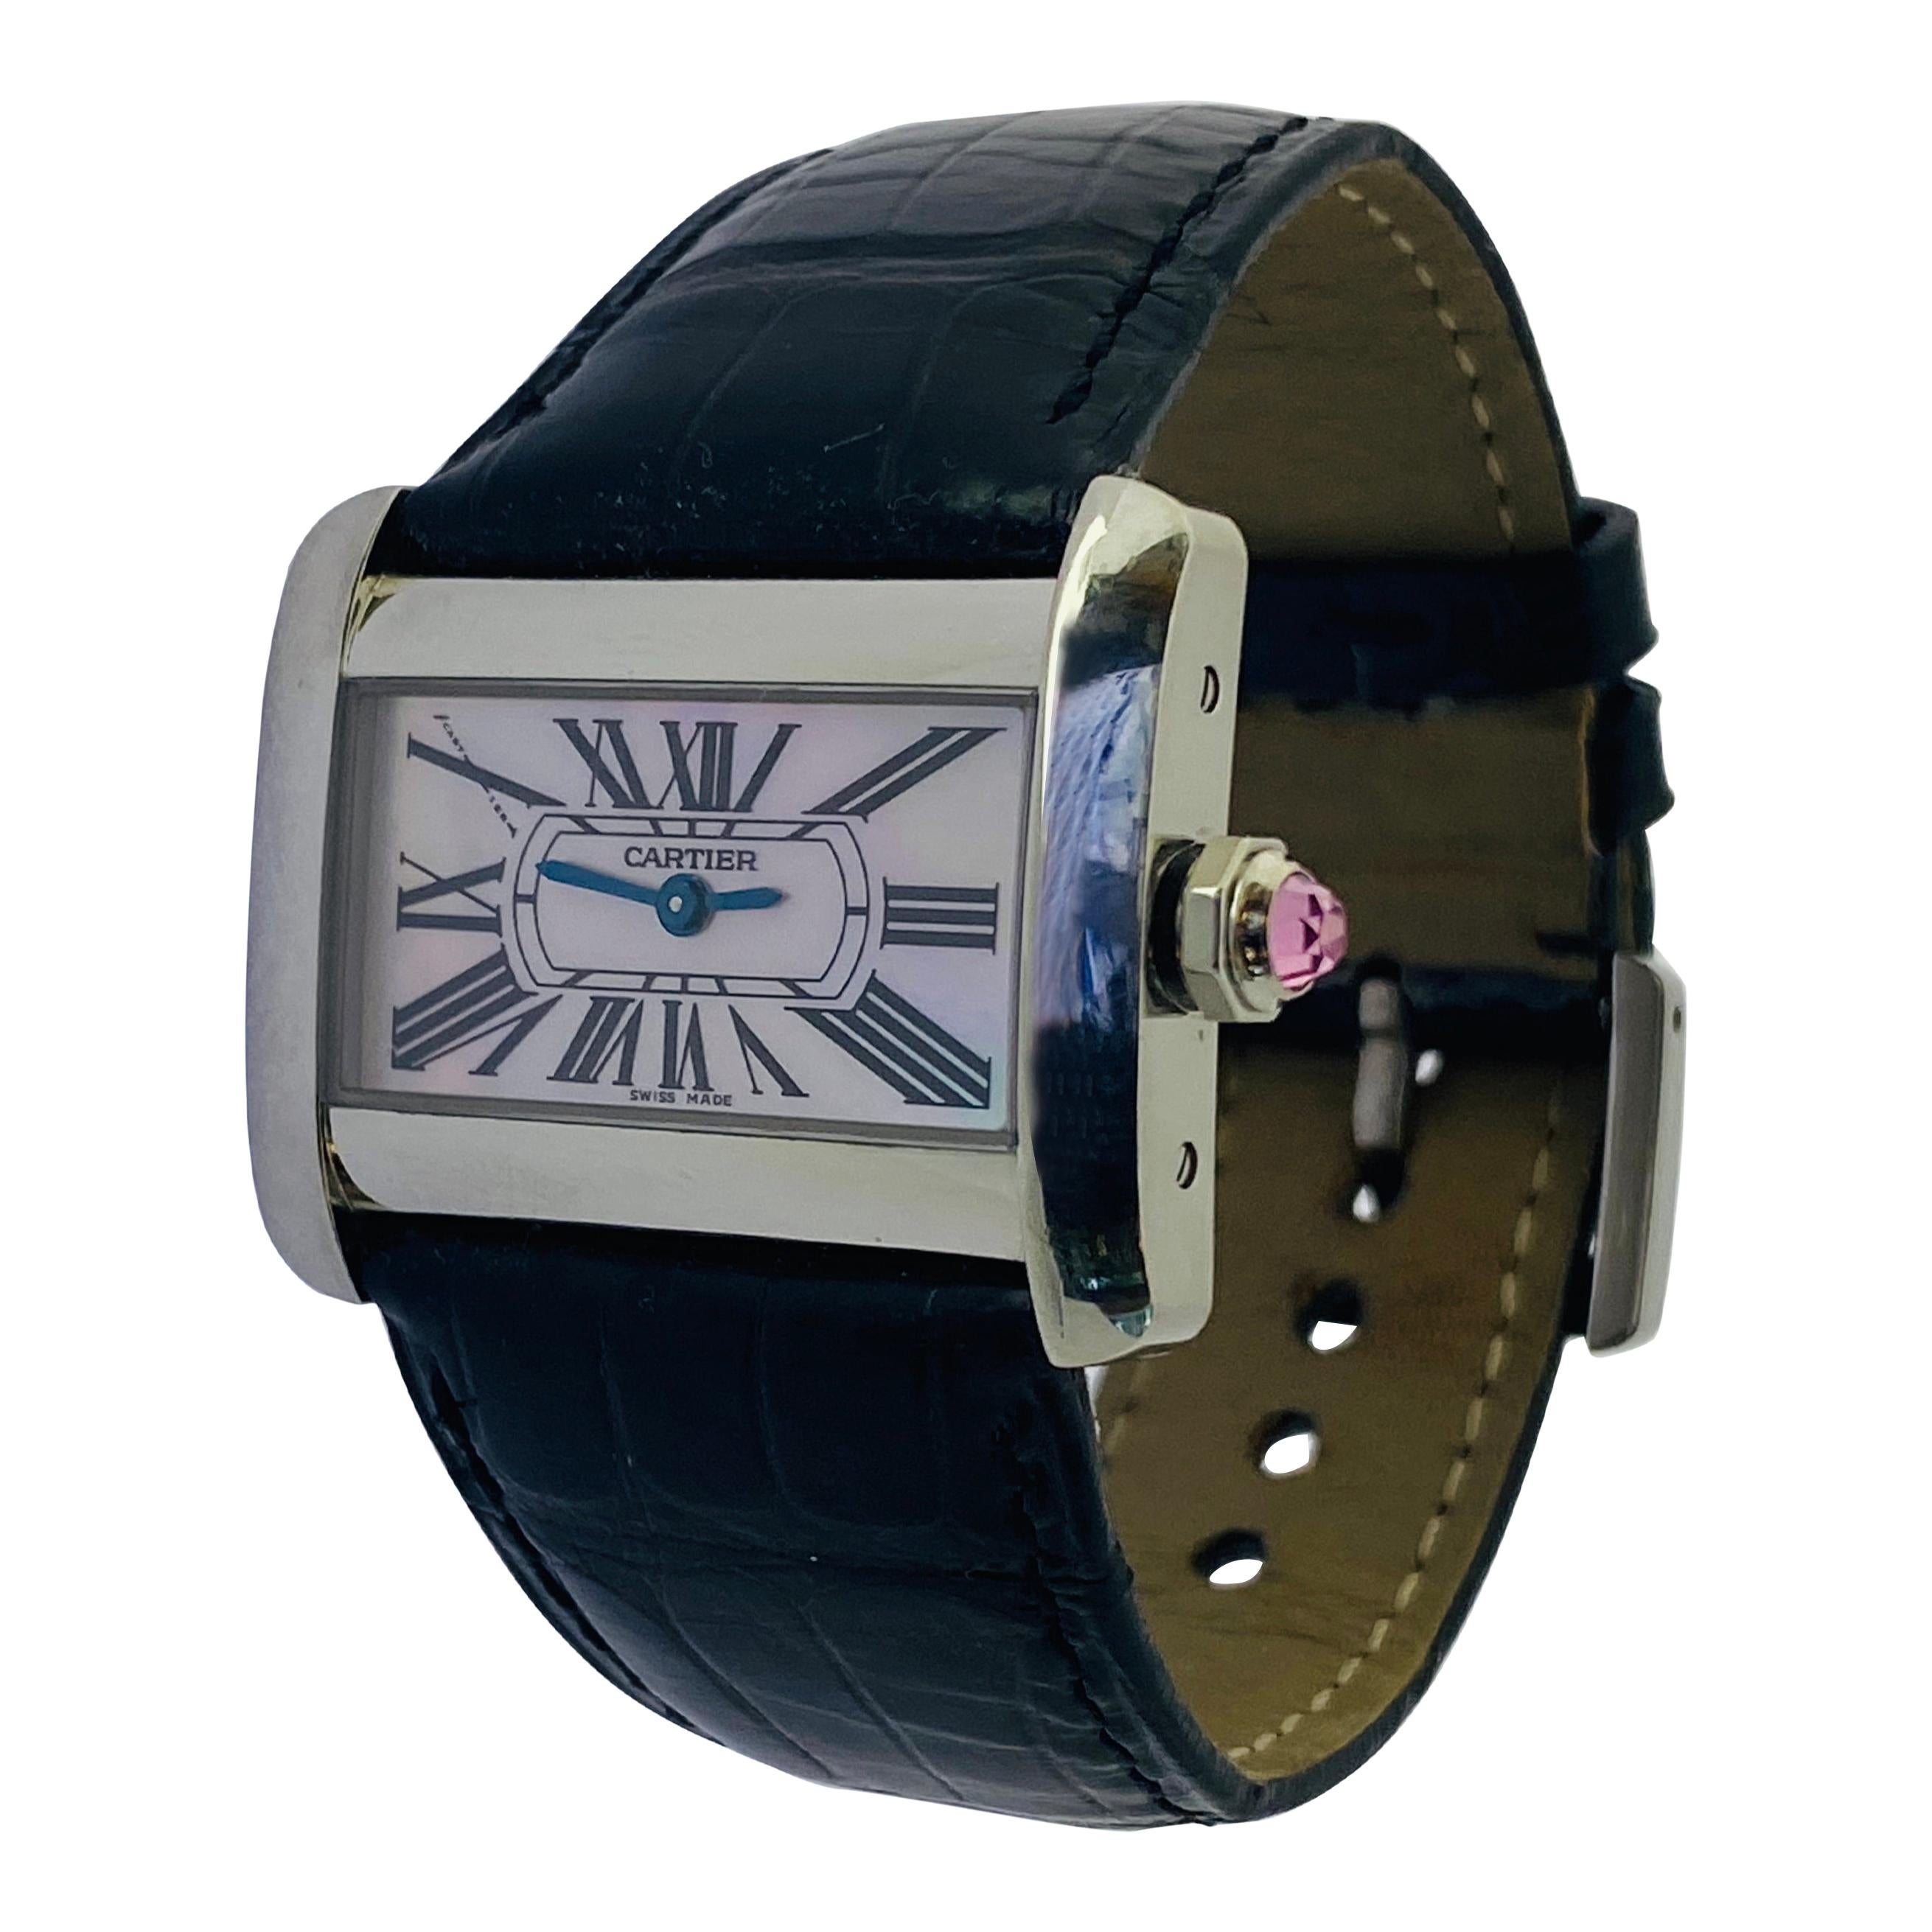 Cartier: Stahl-Quarz-Uhr #2599 mit rosa Cabochon-Zifferblatt und Perlmutt-Zifferblatt von Cartier